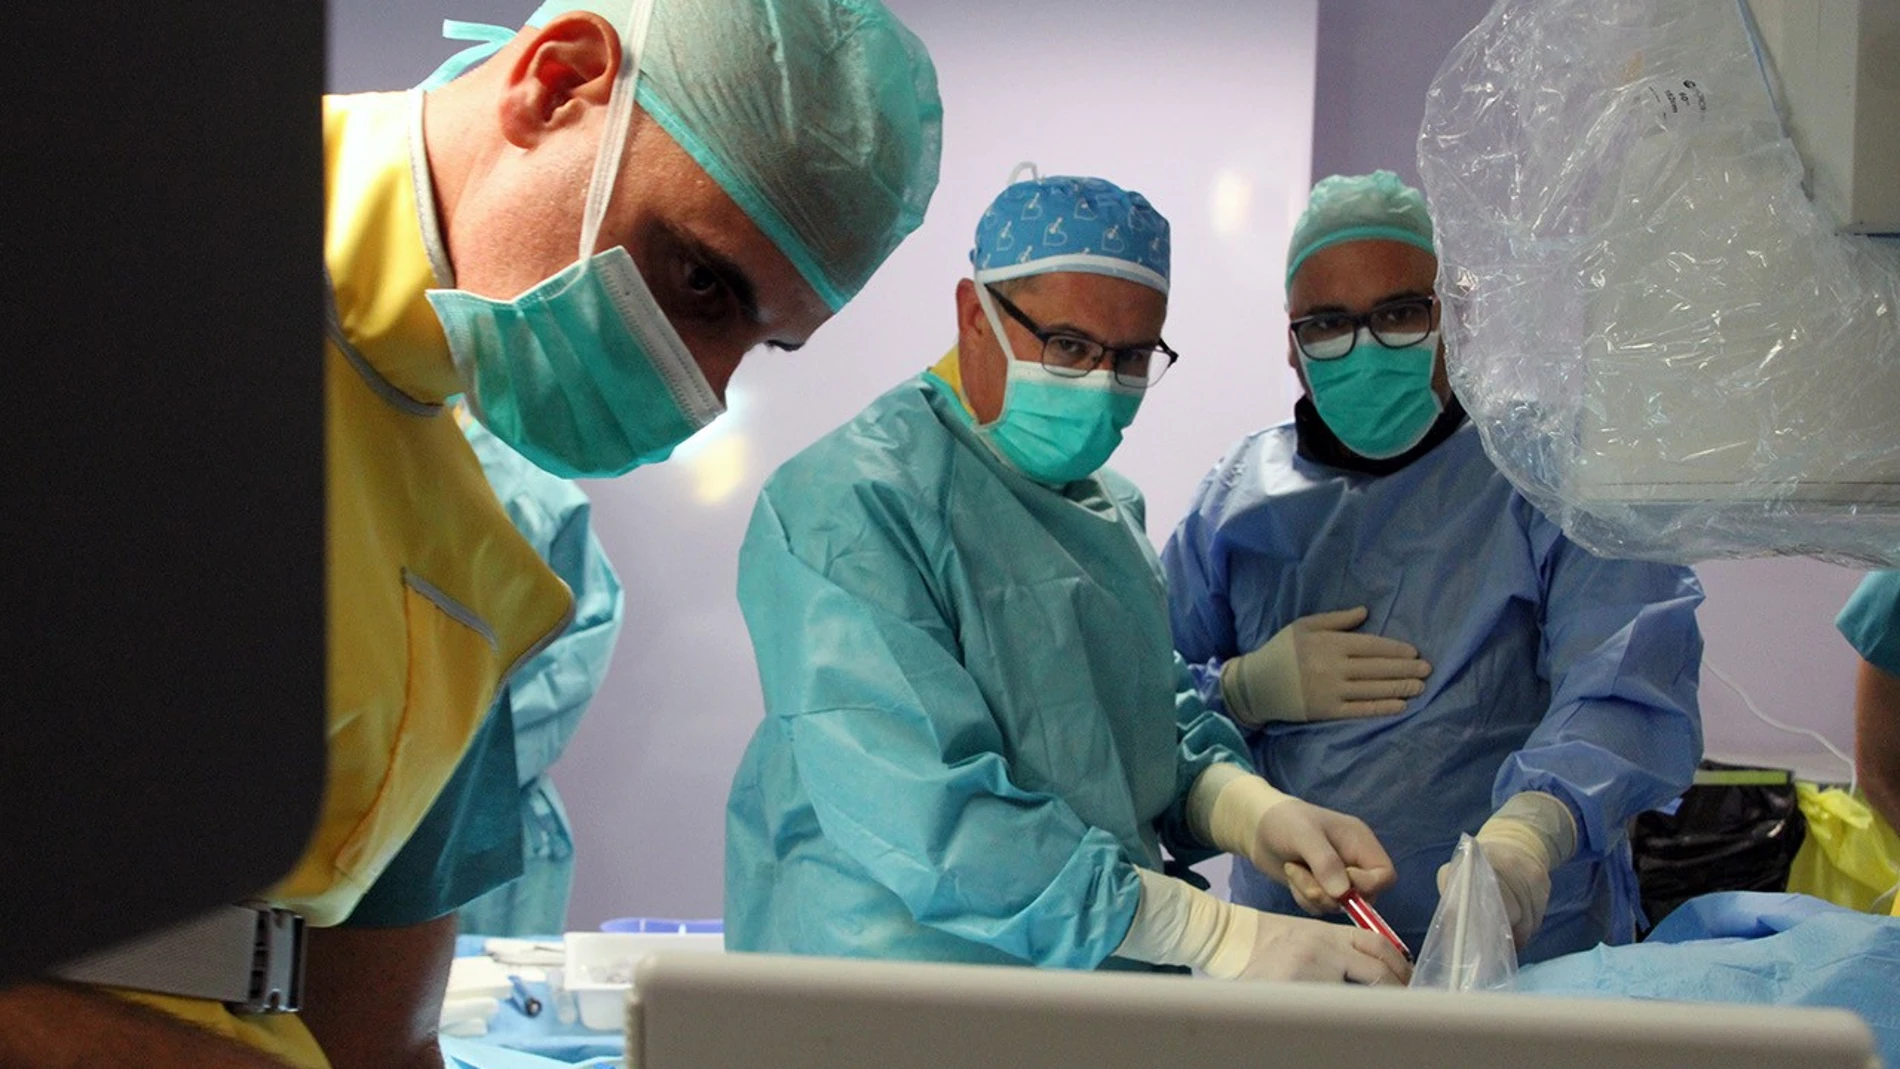 El Hospital Quirónsalud Sagrado Corazón realiza el primer implante de marcapasos sin cables de la sanidad privada sevillana